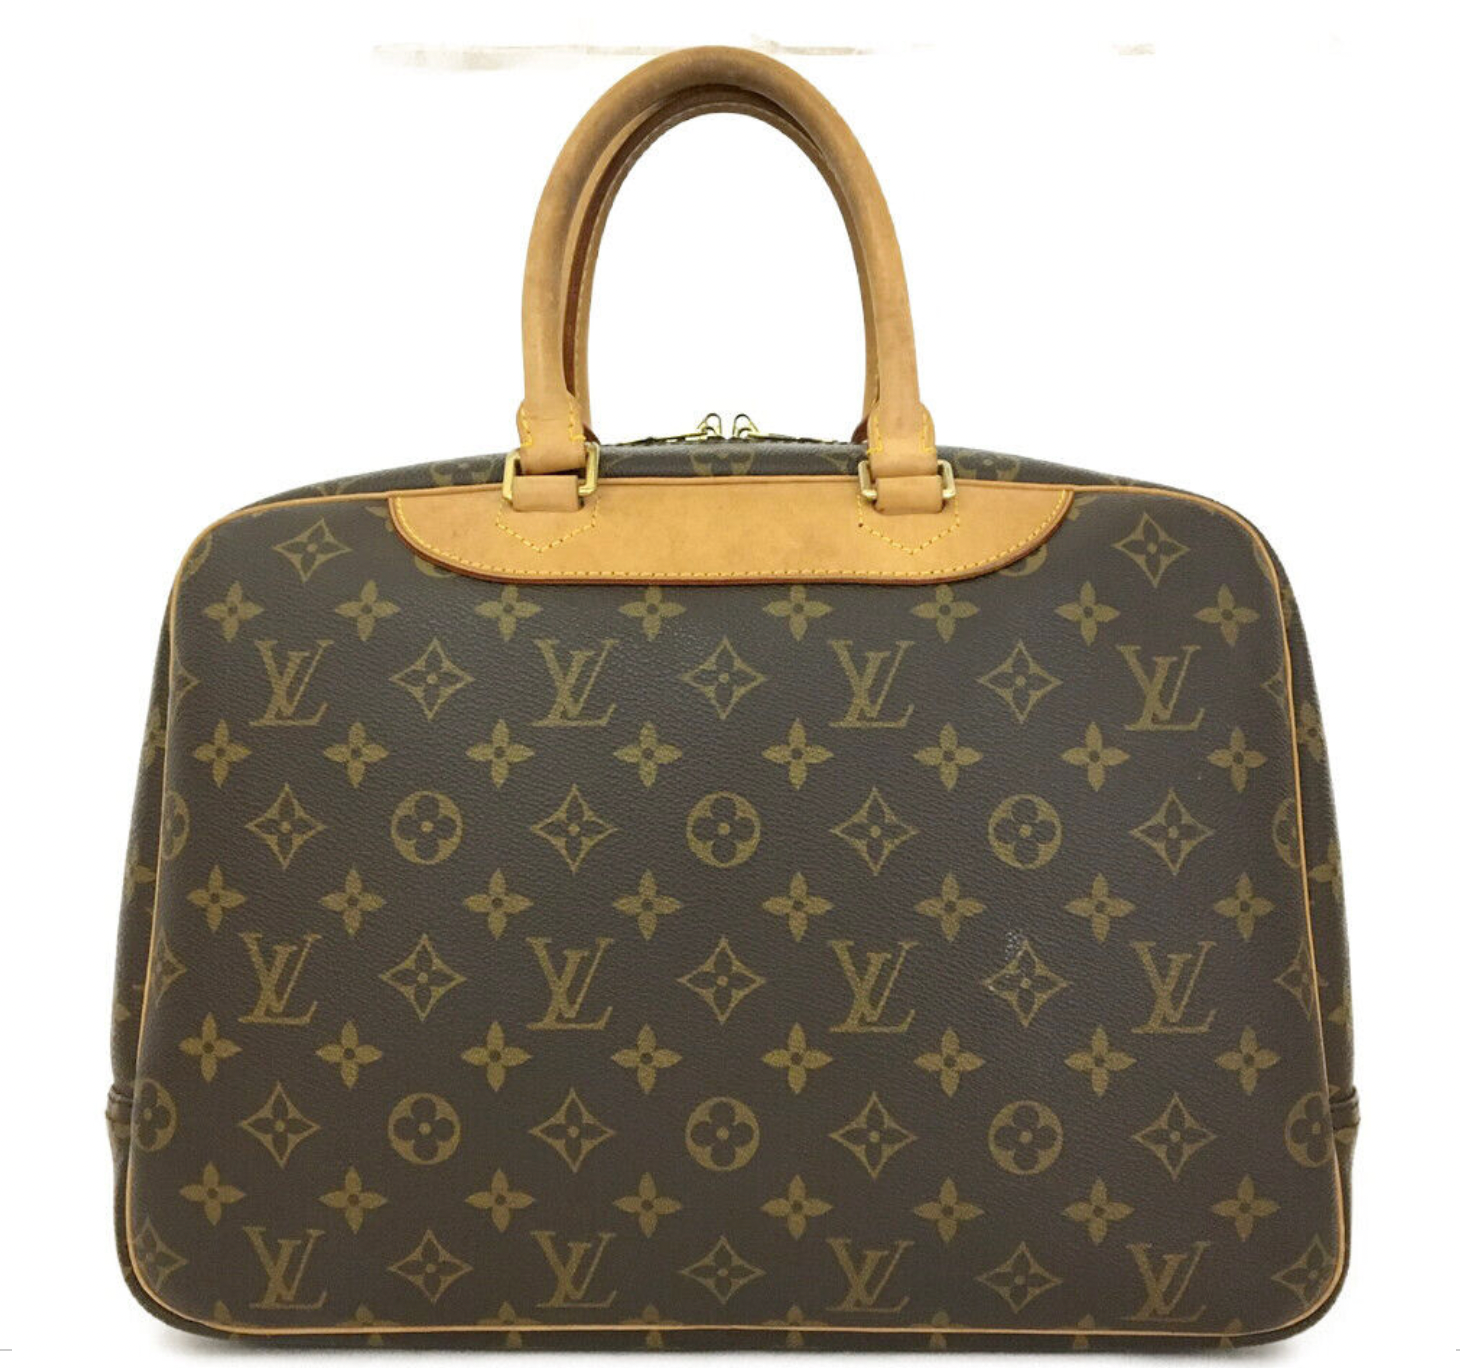 Vintage Louis Vuitton Deauville Monogram Tote Bag VI0998 022723